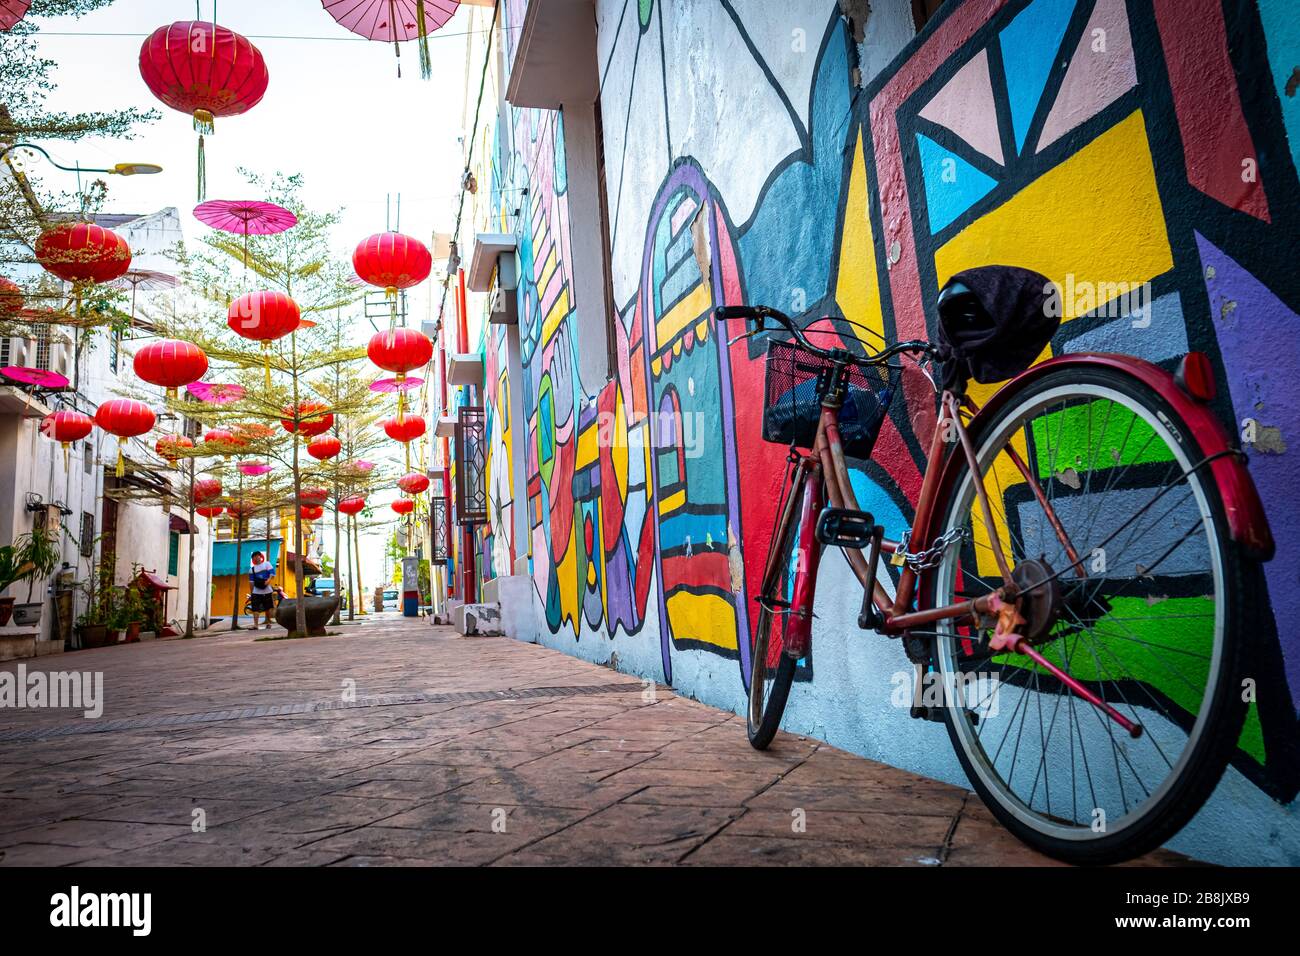 Una bicicleta en la colorida calle Malaca, una popular ciudad turística costera famosa por su comida y edificios históricos Foto de stock